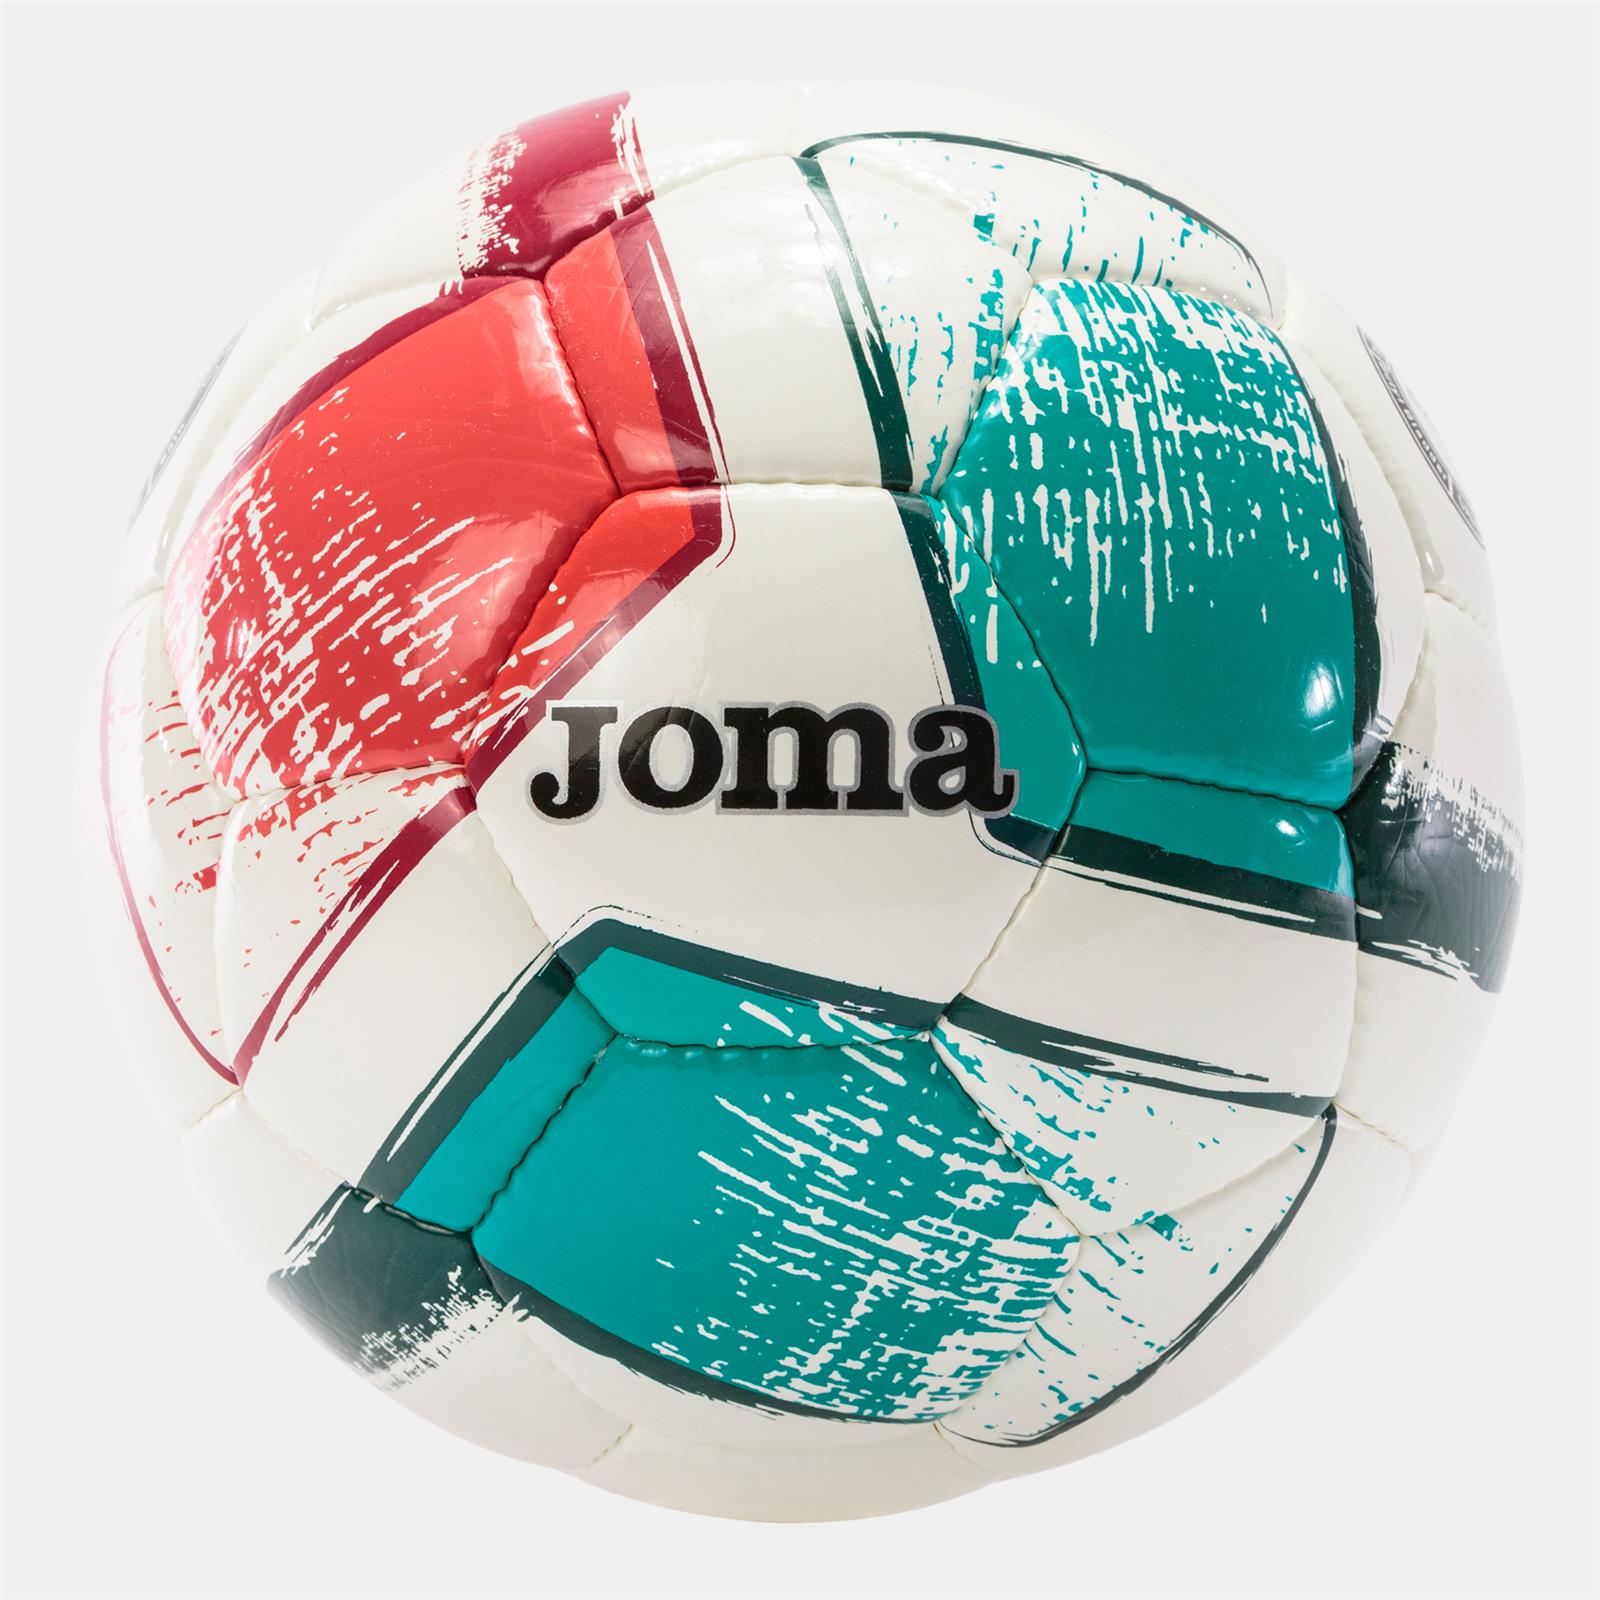 JOMA Nuovo Pallone Dali II Rosso-Verde (Misura 4 - BIANCO - ROSSO - VERDE)